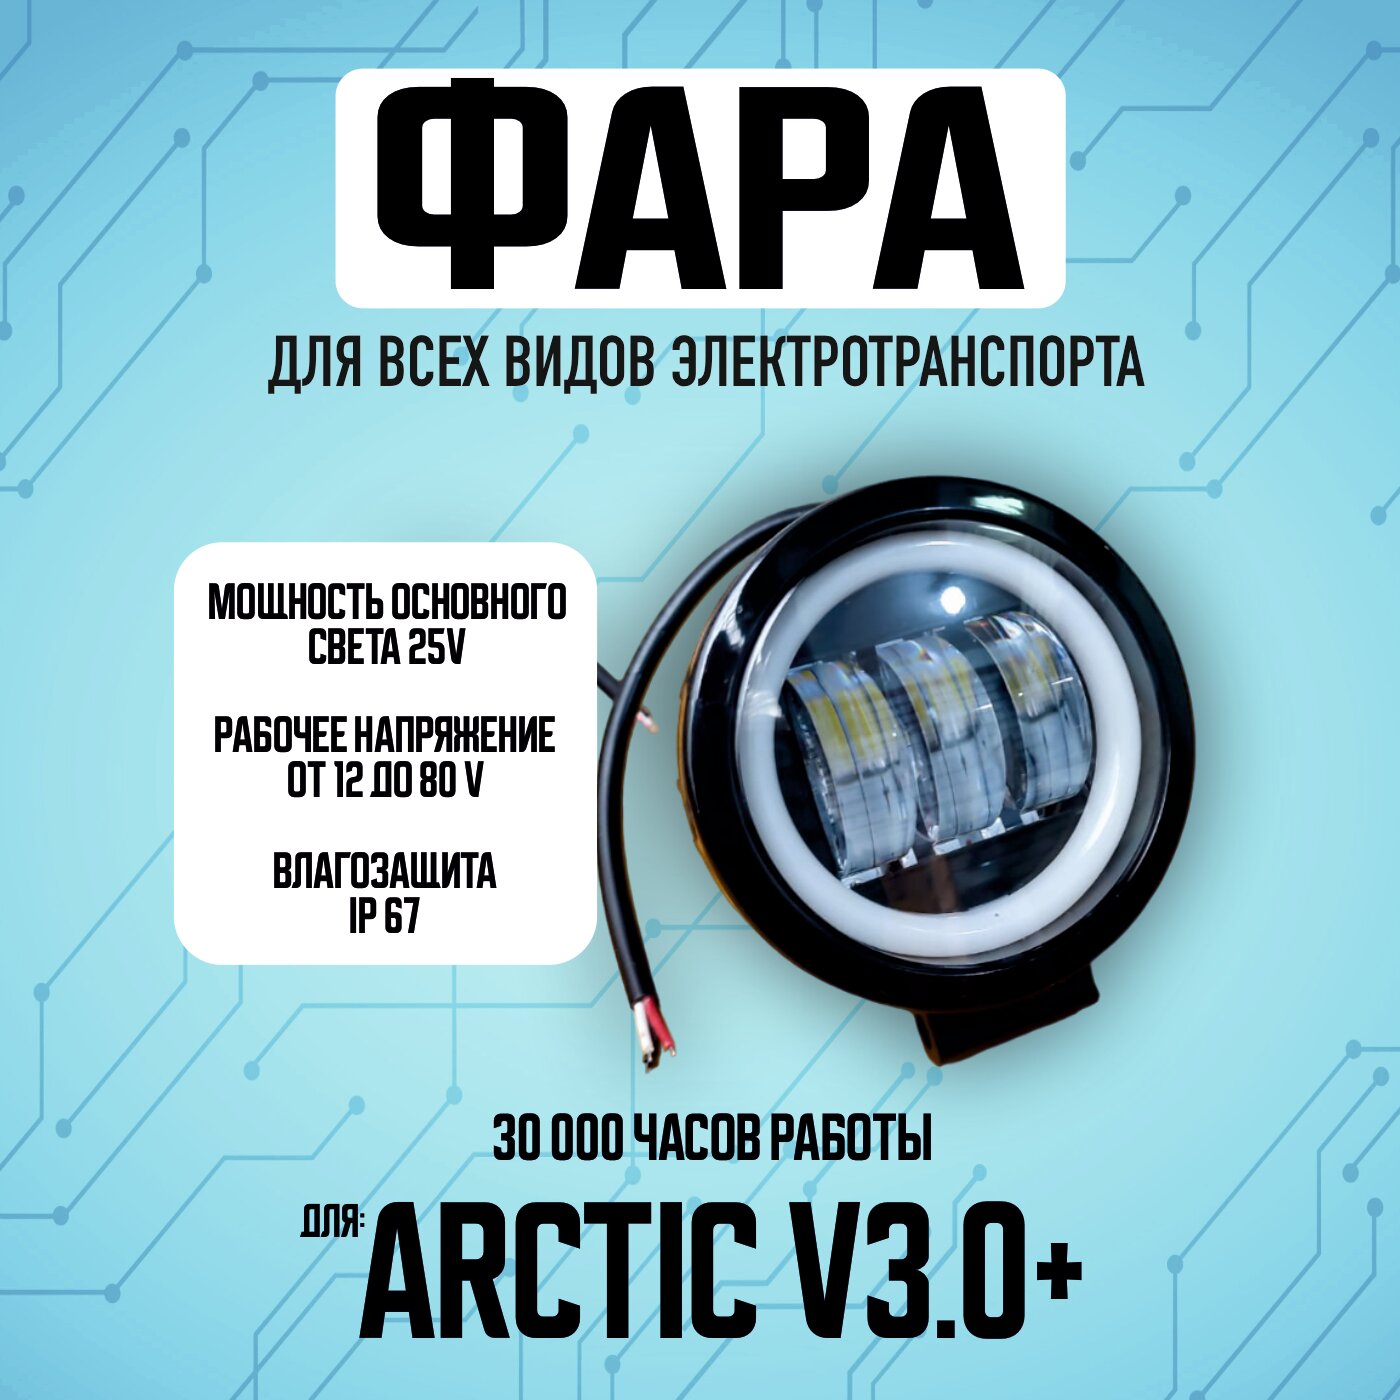 Противотуманная светодиодная фара Arctic v3.0+ для всех видов электротранспорта / Круглой формы / 2 диода птф дхо